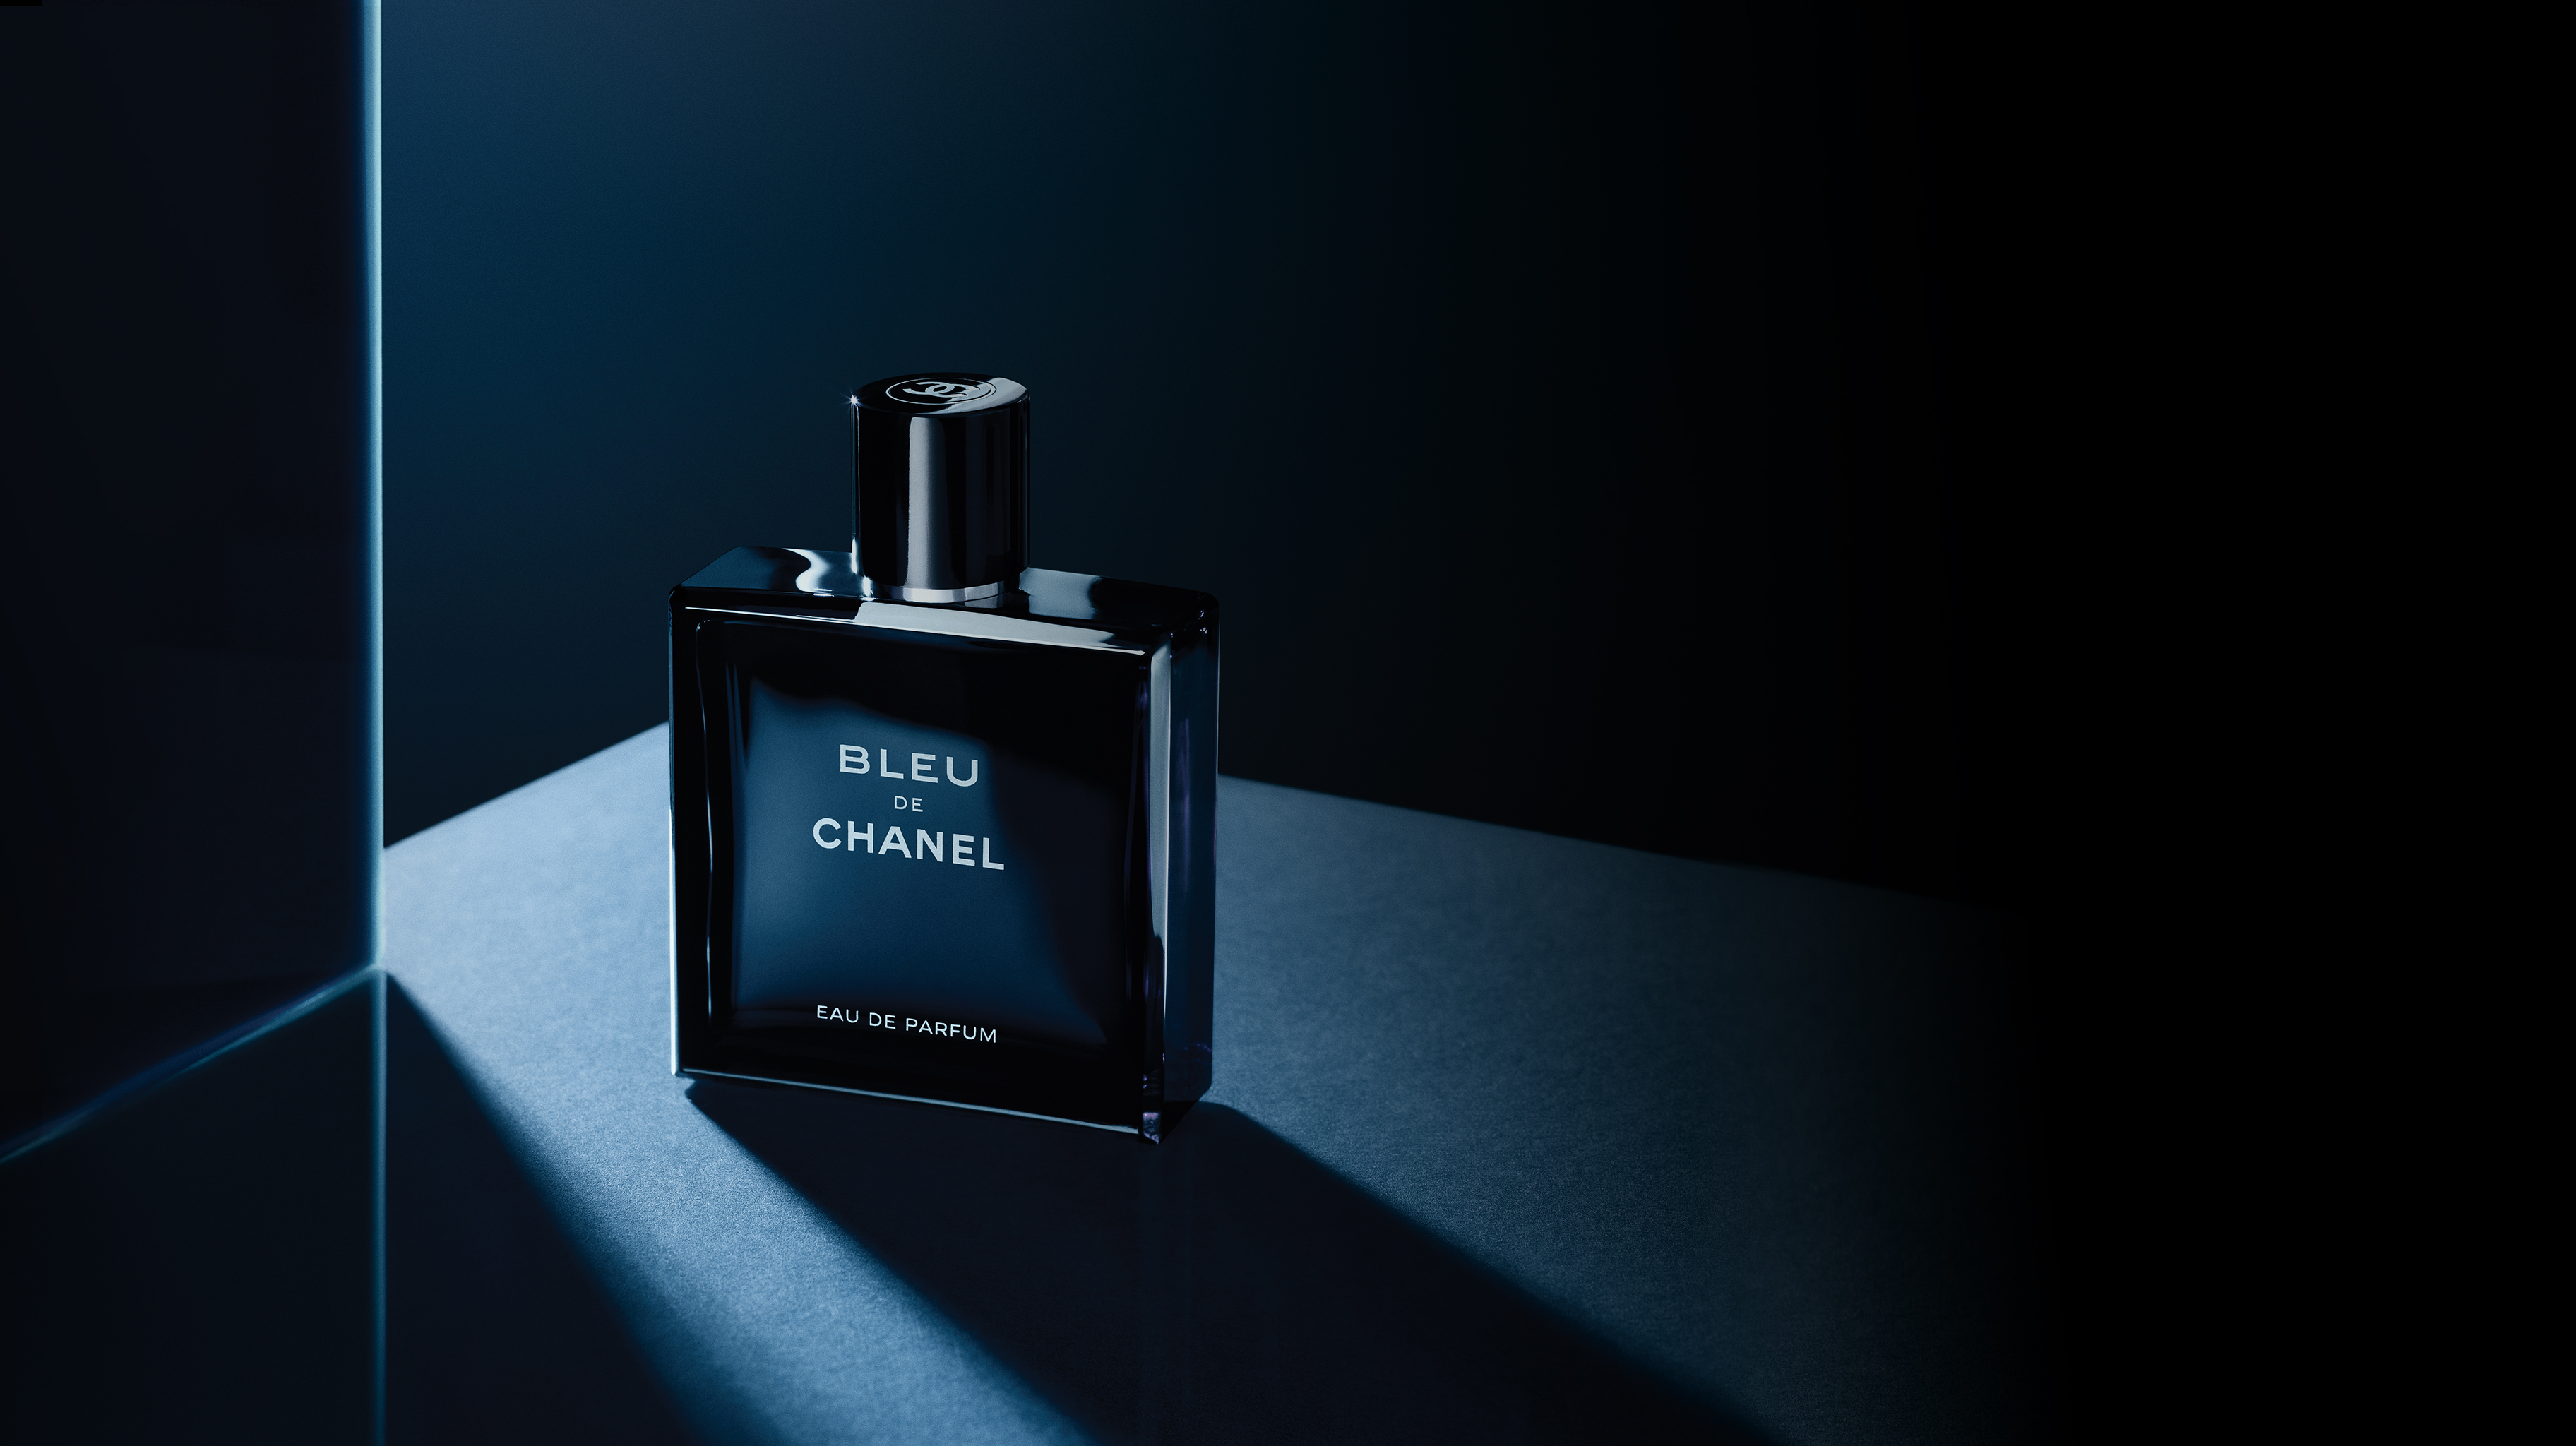 Bleu de Chanel - 1400 гривен